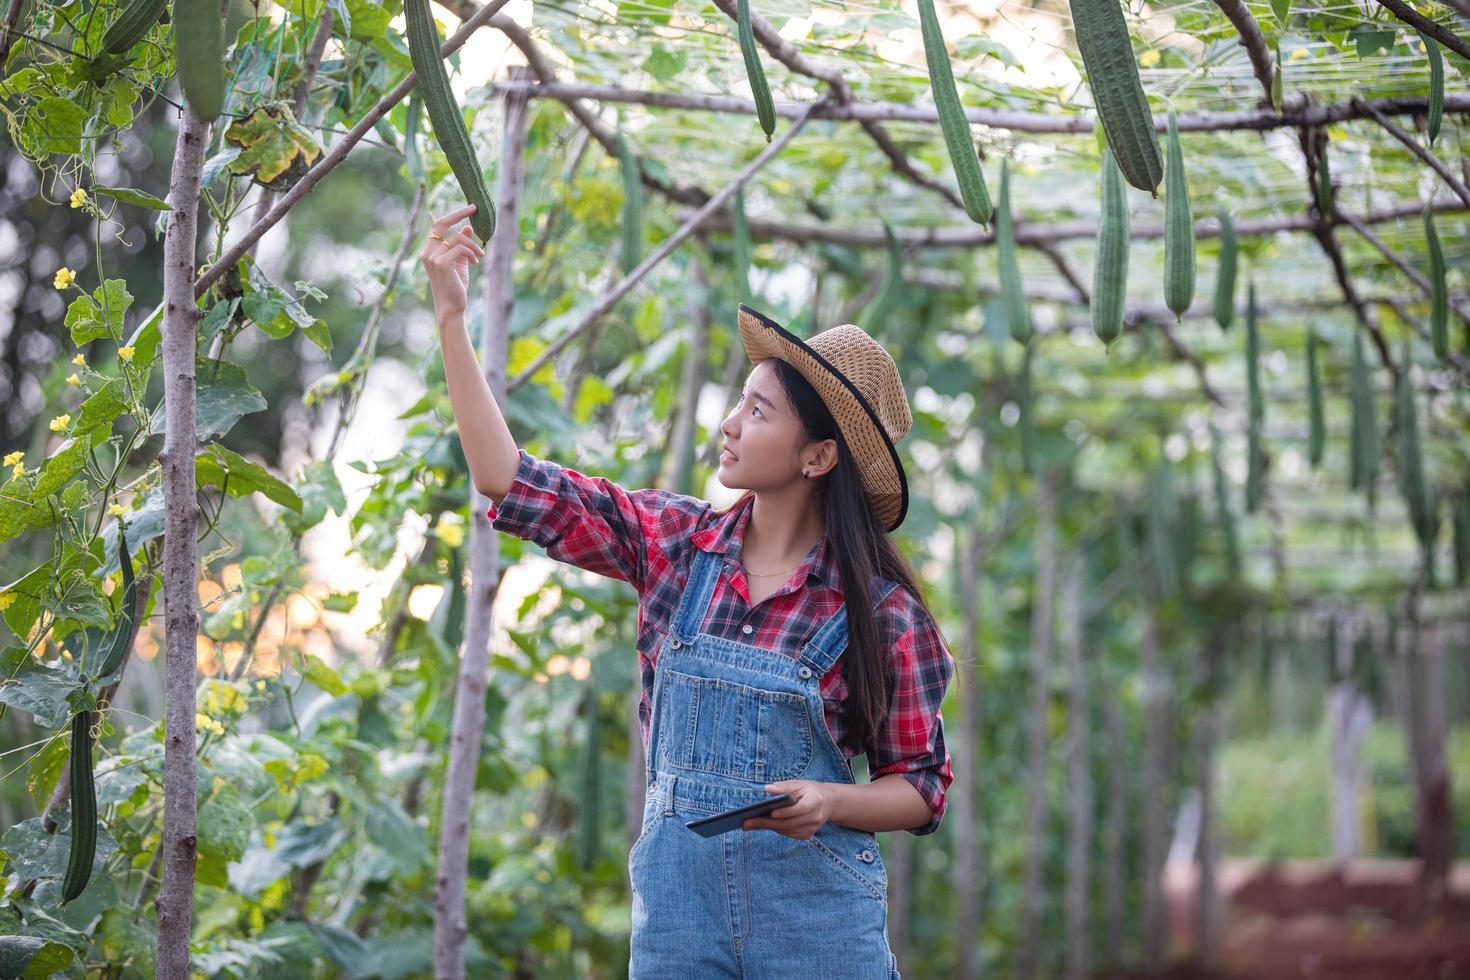 mujeres agrónomas y agricultoras de asia que utilizan tecnología para inspeccionar en el campo agrícola y vegetal orgánico foto